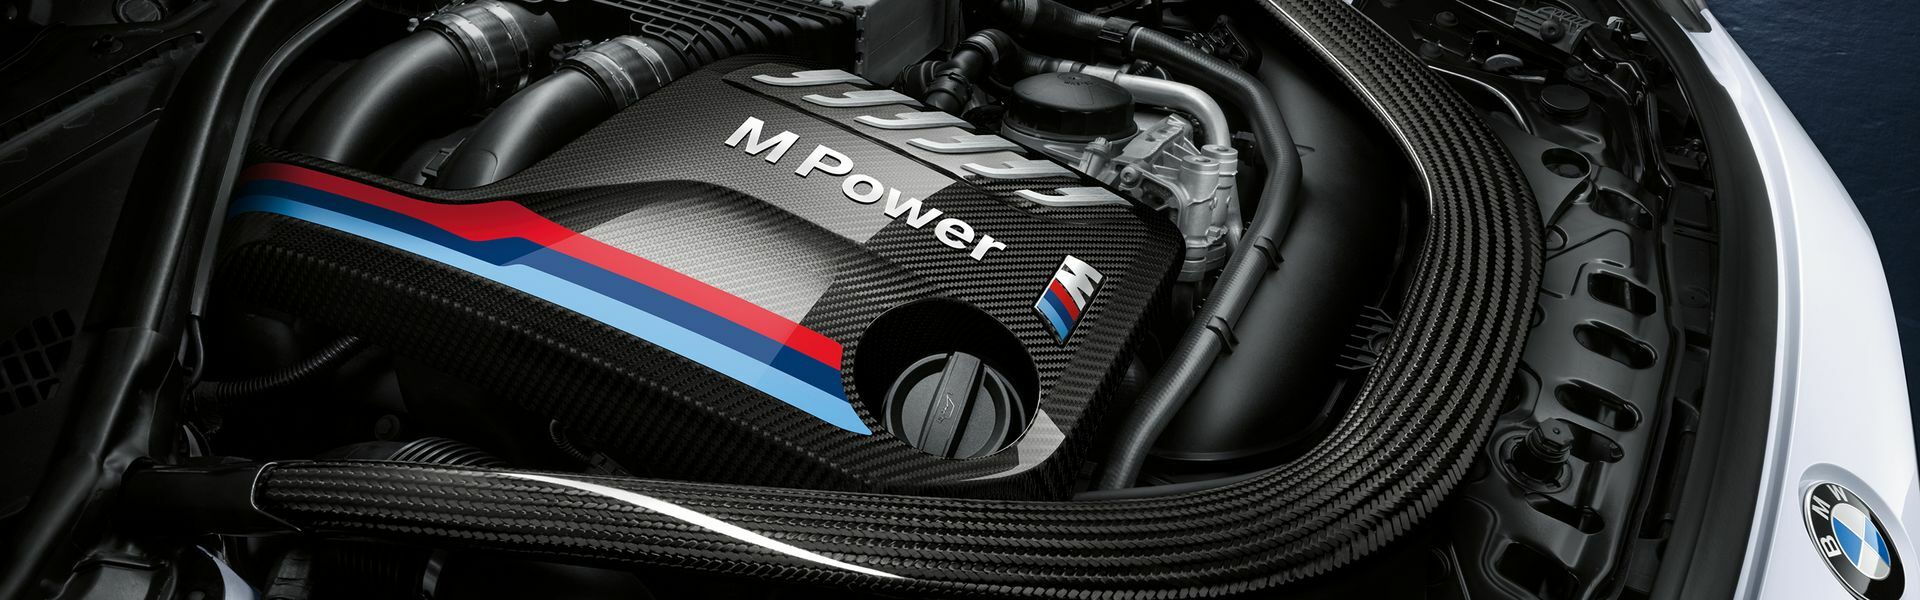 Zvýšení výkonu/ Softwarové úpravy/ Drobné performance díly pro automobil BMW X5 50i